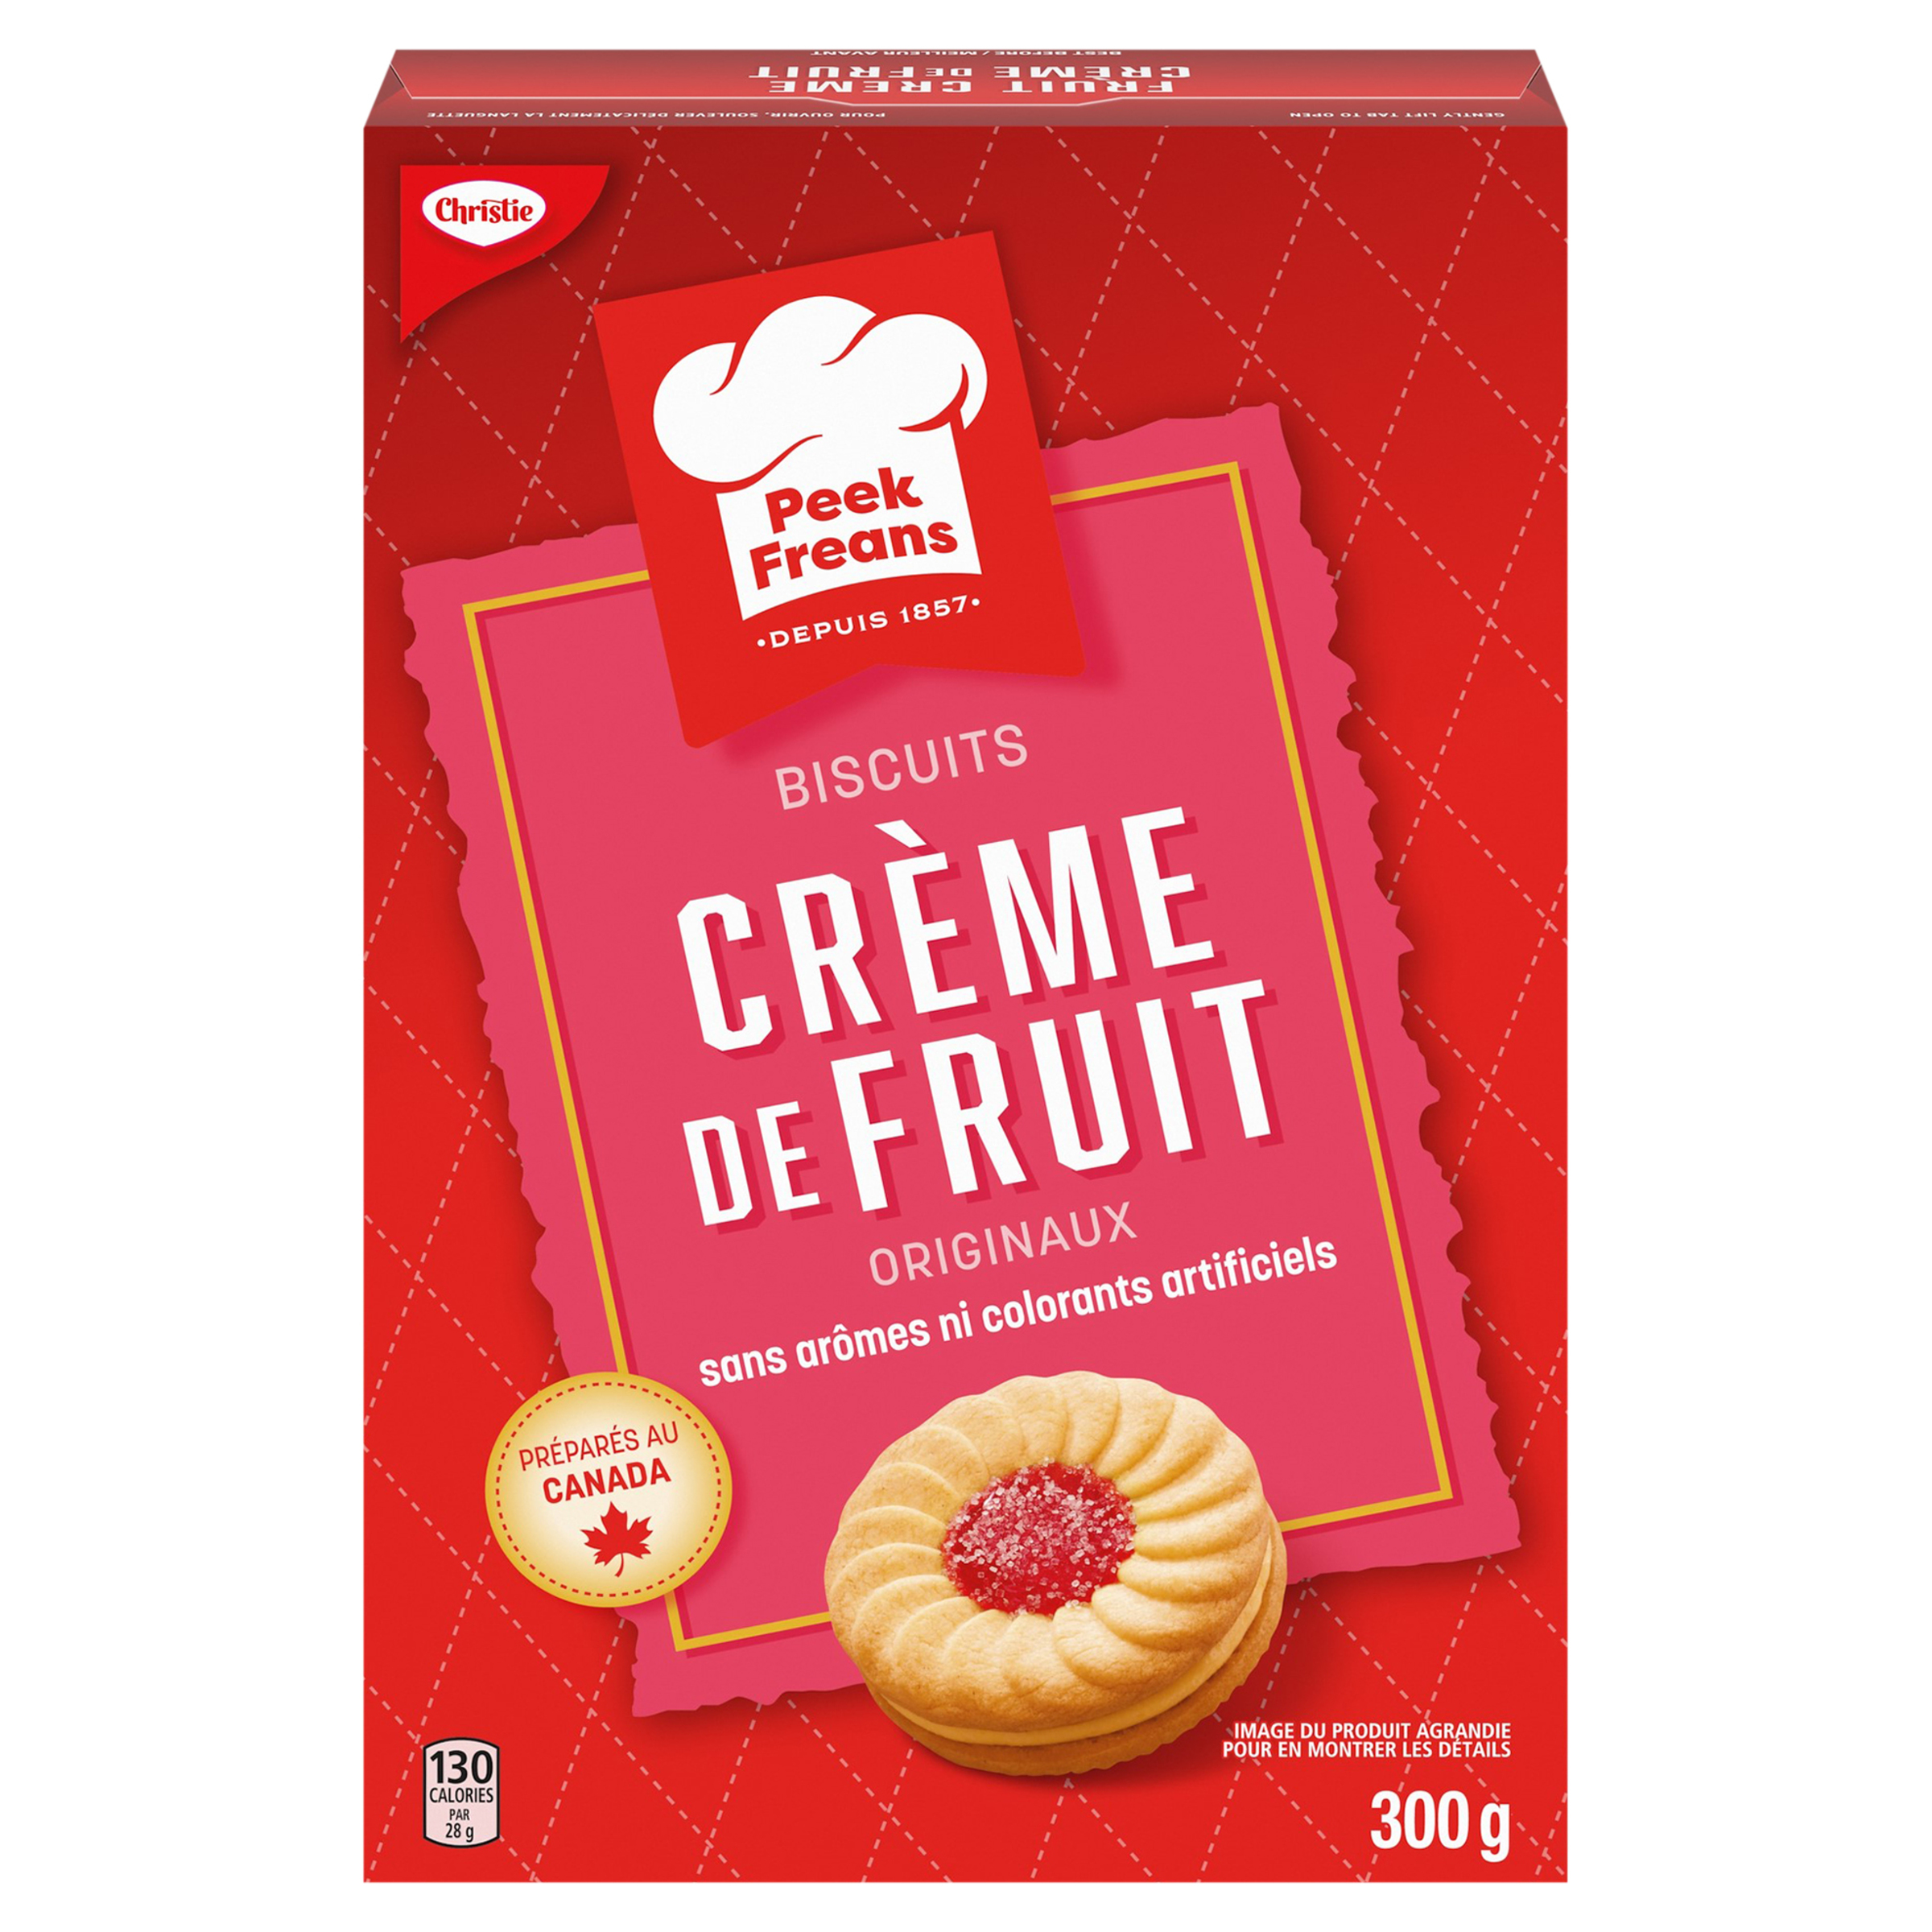 Peek Freans Crème de fruit, 300 g